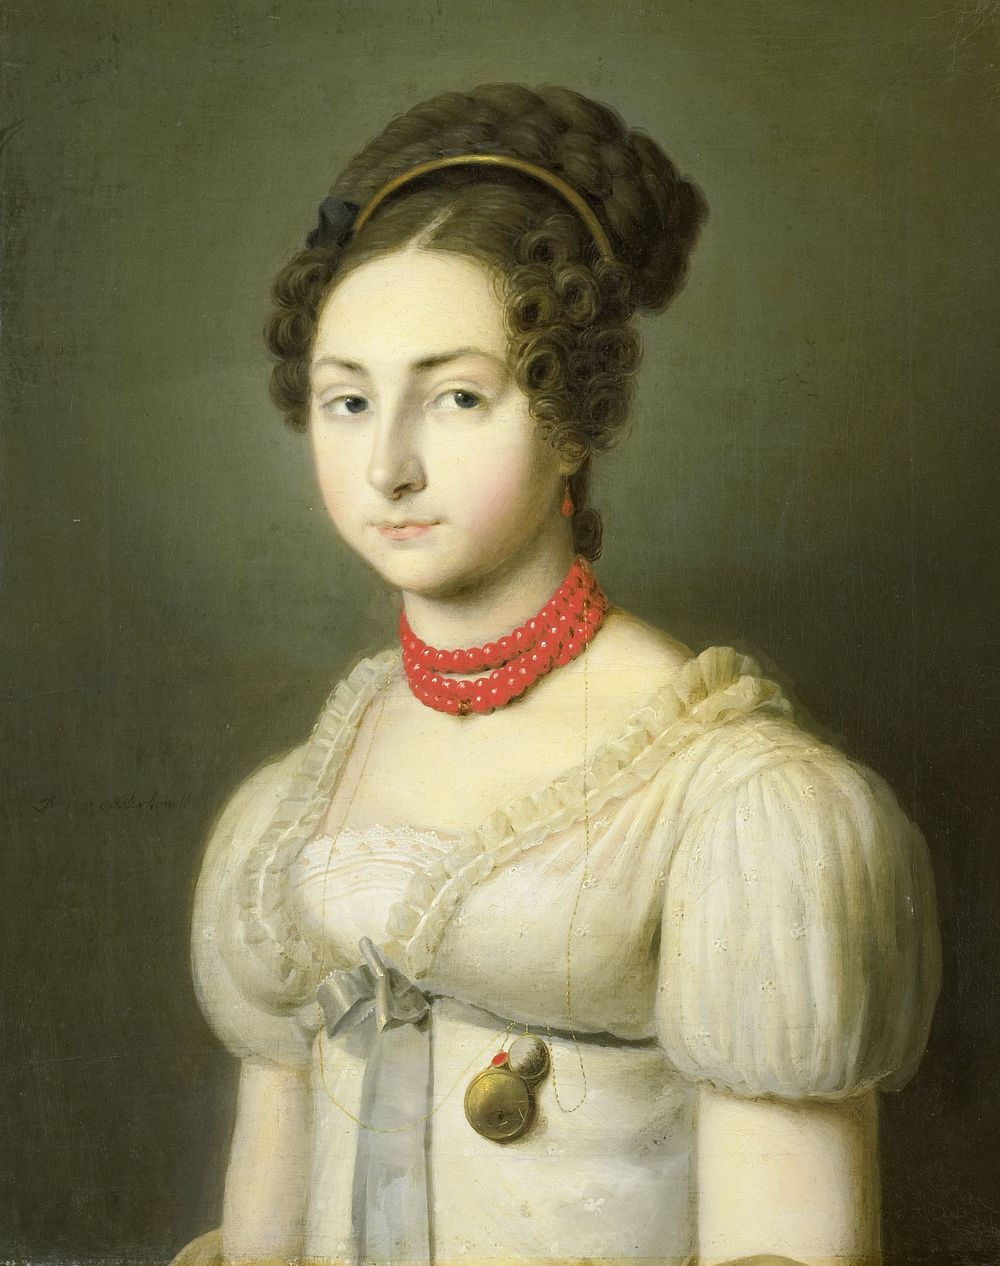 Portrait of Jacoba van Wessem, Wife of Lord Stumphius, Burgomaster of Beverwijk (c. 1820 - c. 1830) by Dirk van Oosterhoudt